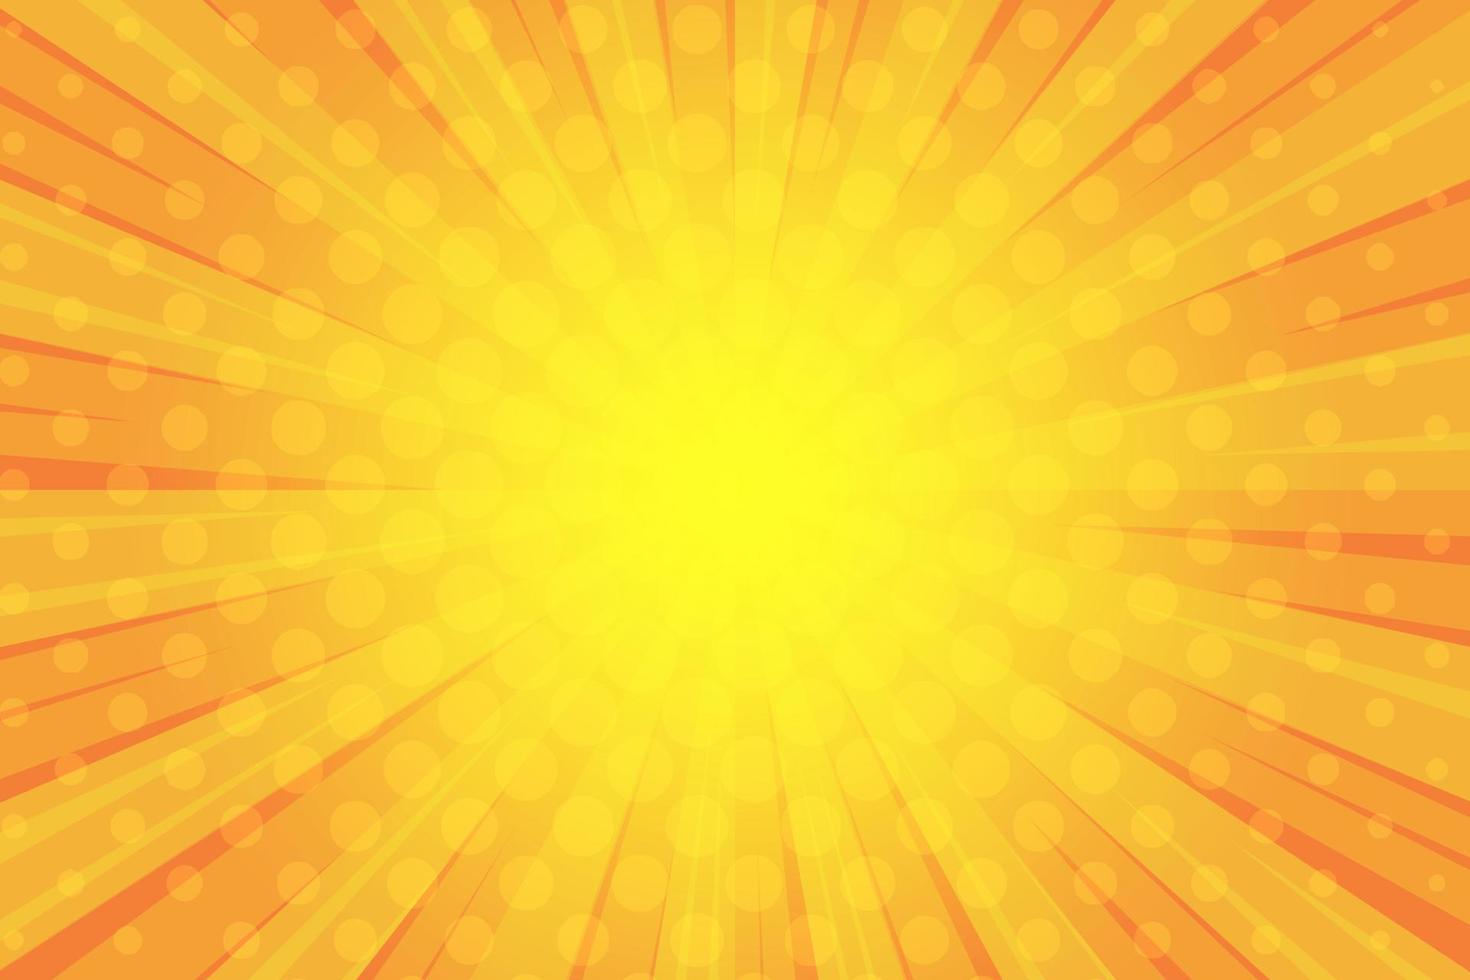 fond de bande dessinée pop art. illustration de tourbillon orange starburst avec effet de demi-teinte. motif radial rétro avec rayons concentriques. vecteur